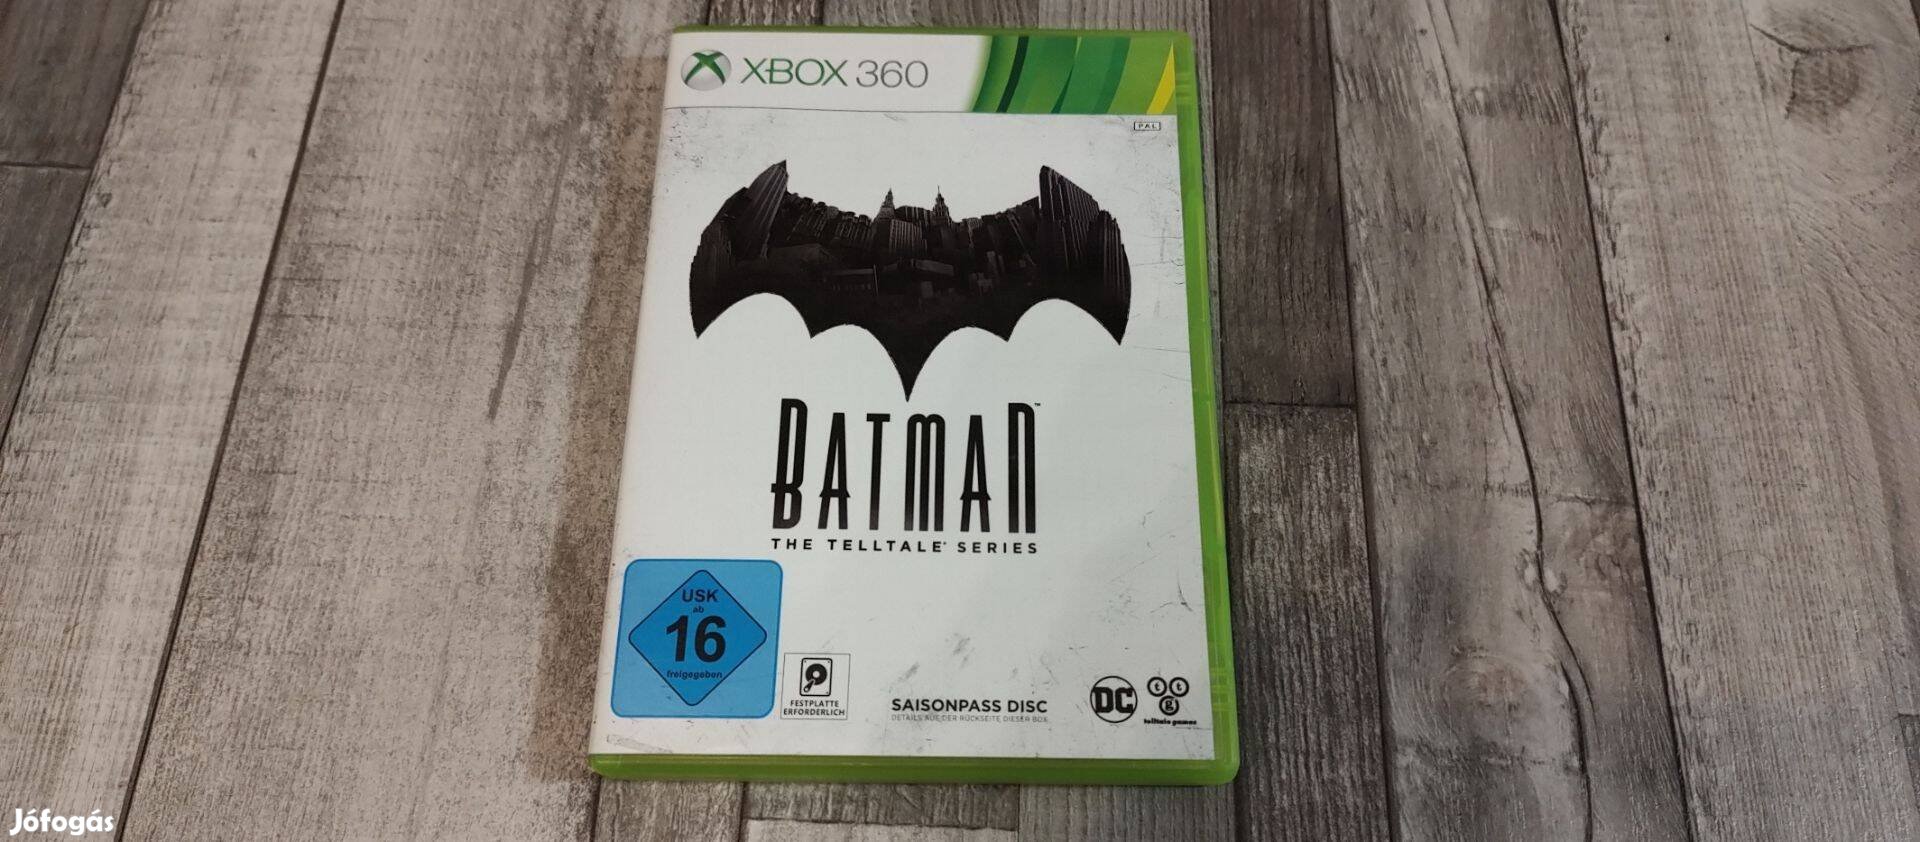 Top Xbox 360 : Batman The Telltale Series Season Pass Disc